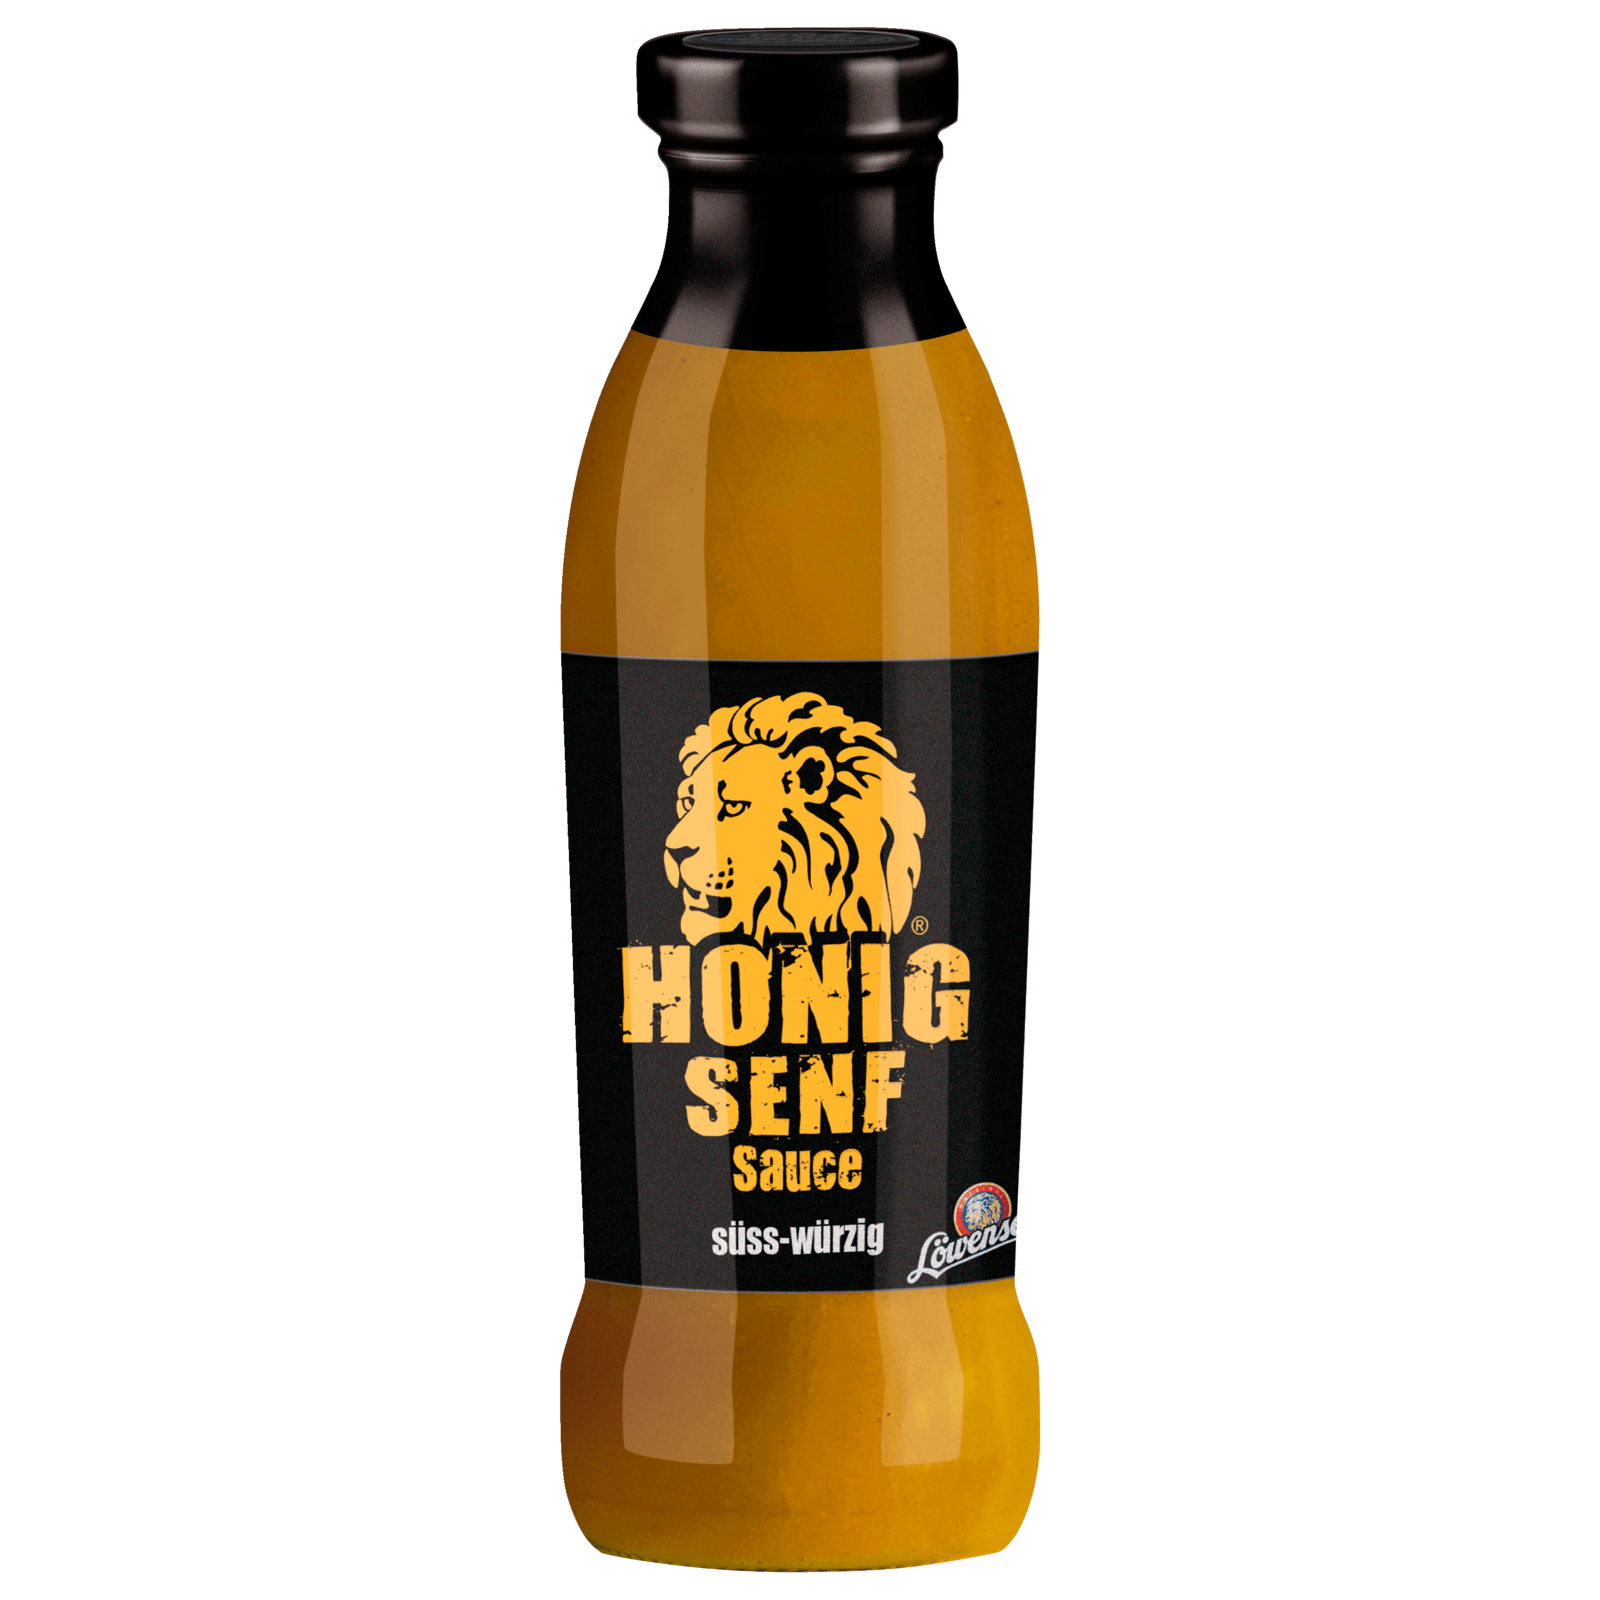 Löwensenf Honig Senf Sauce 230ml bei REWE online bestellen!